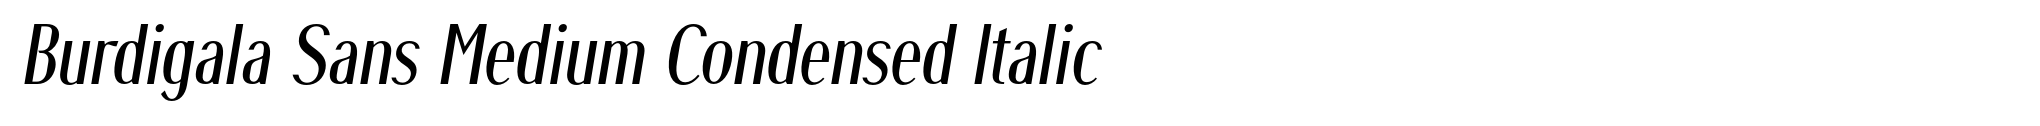 Burdigala Sans Medium Condensed Italic image